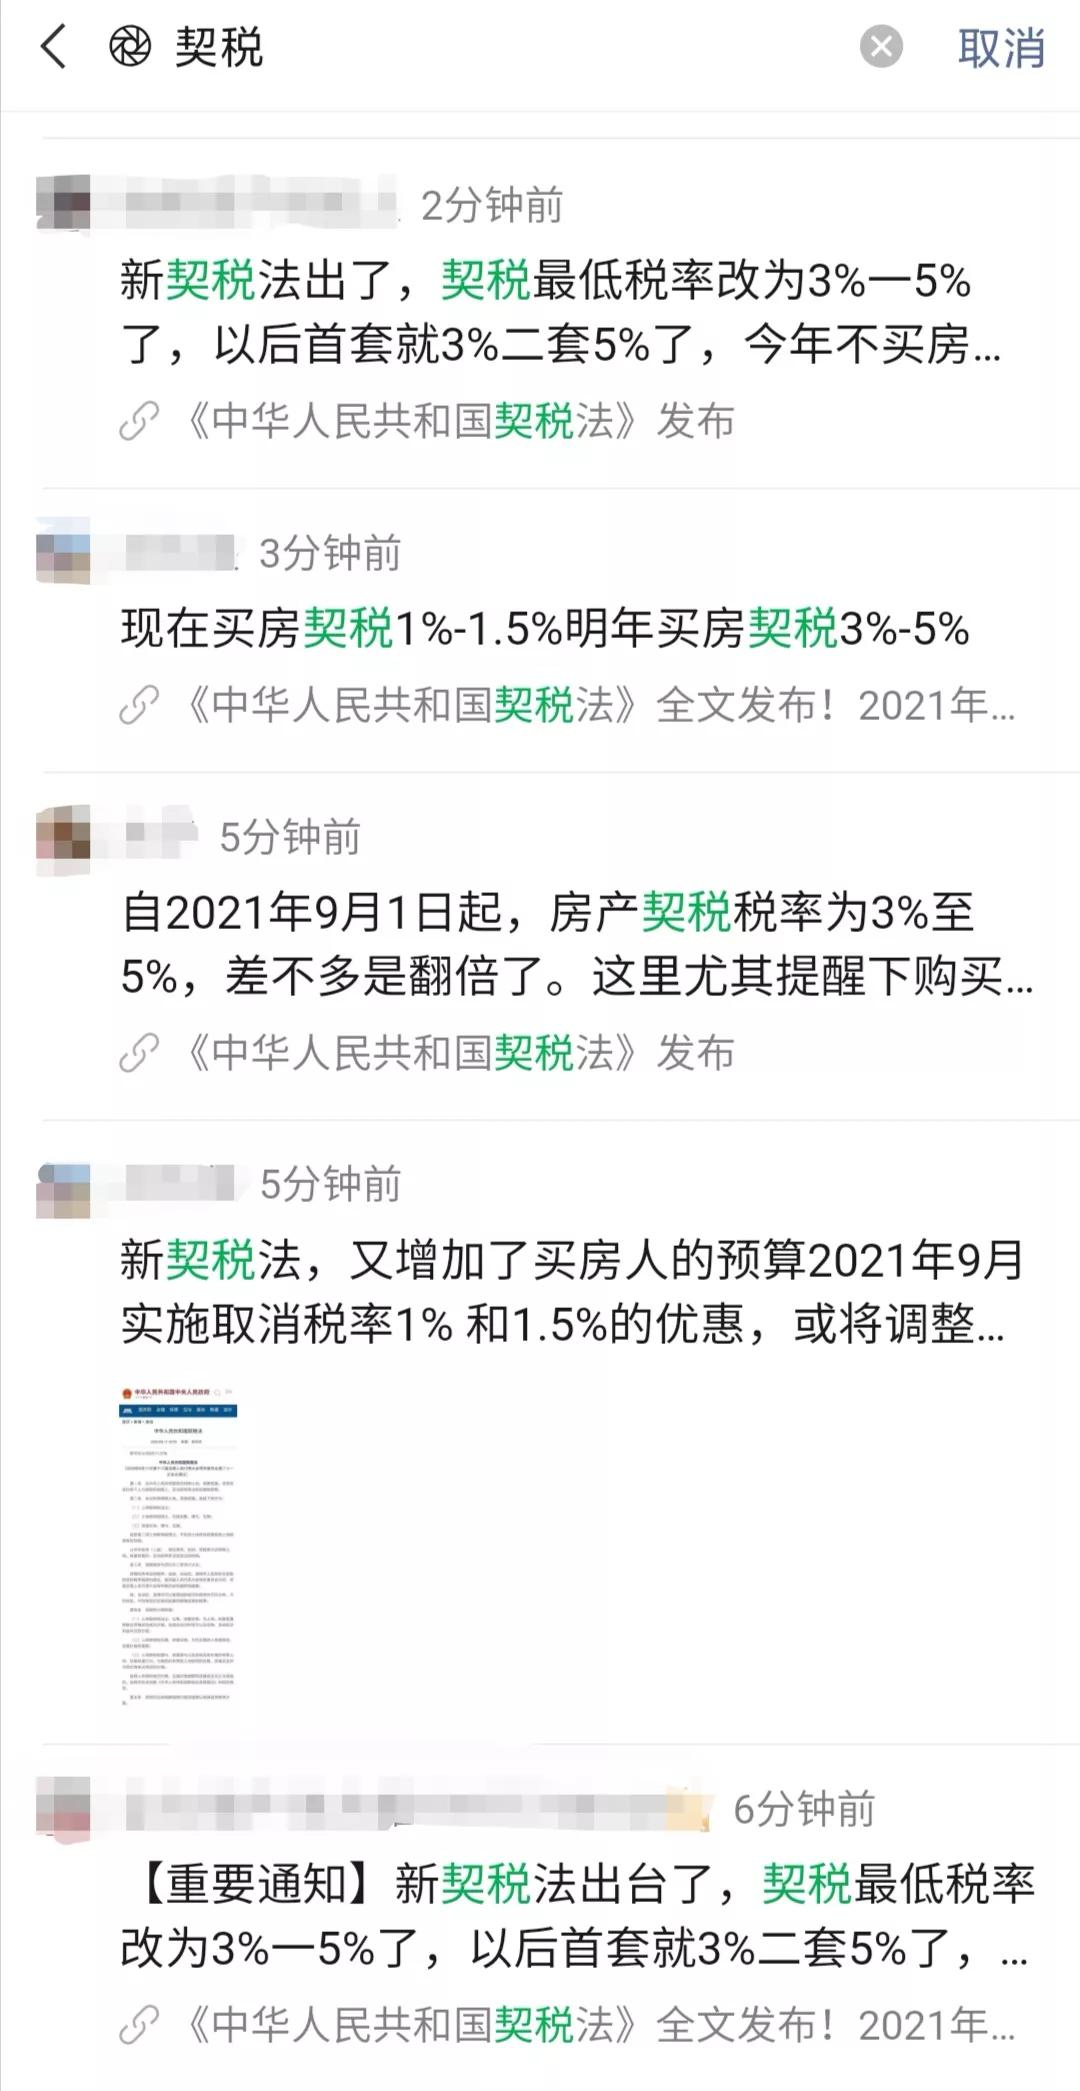 
新《契税法》出台 税率提高到3%‘jbo竞博官网’(图3)